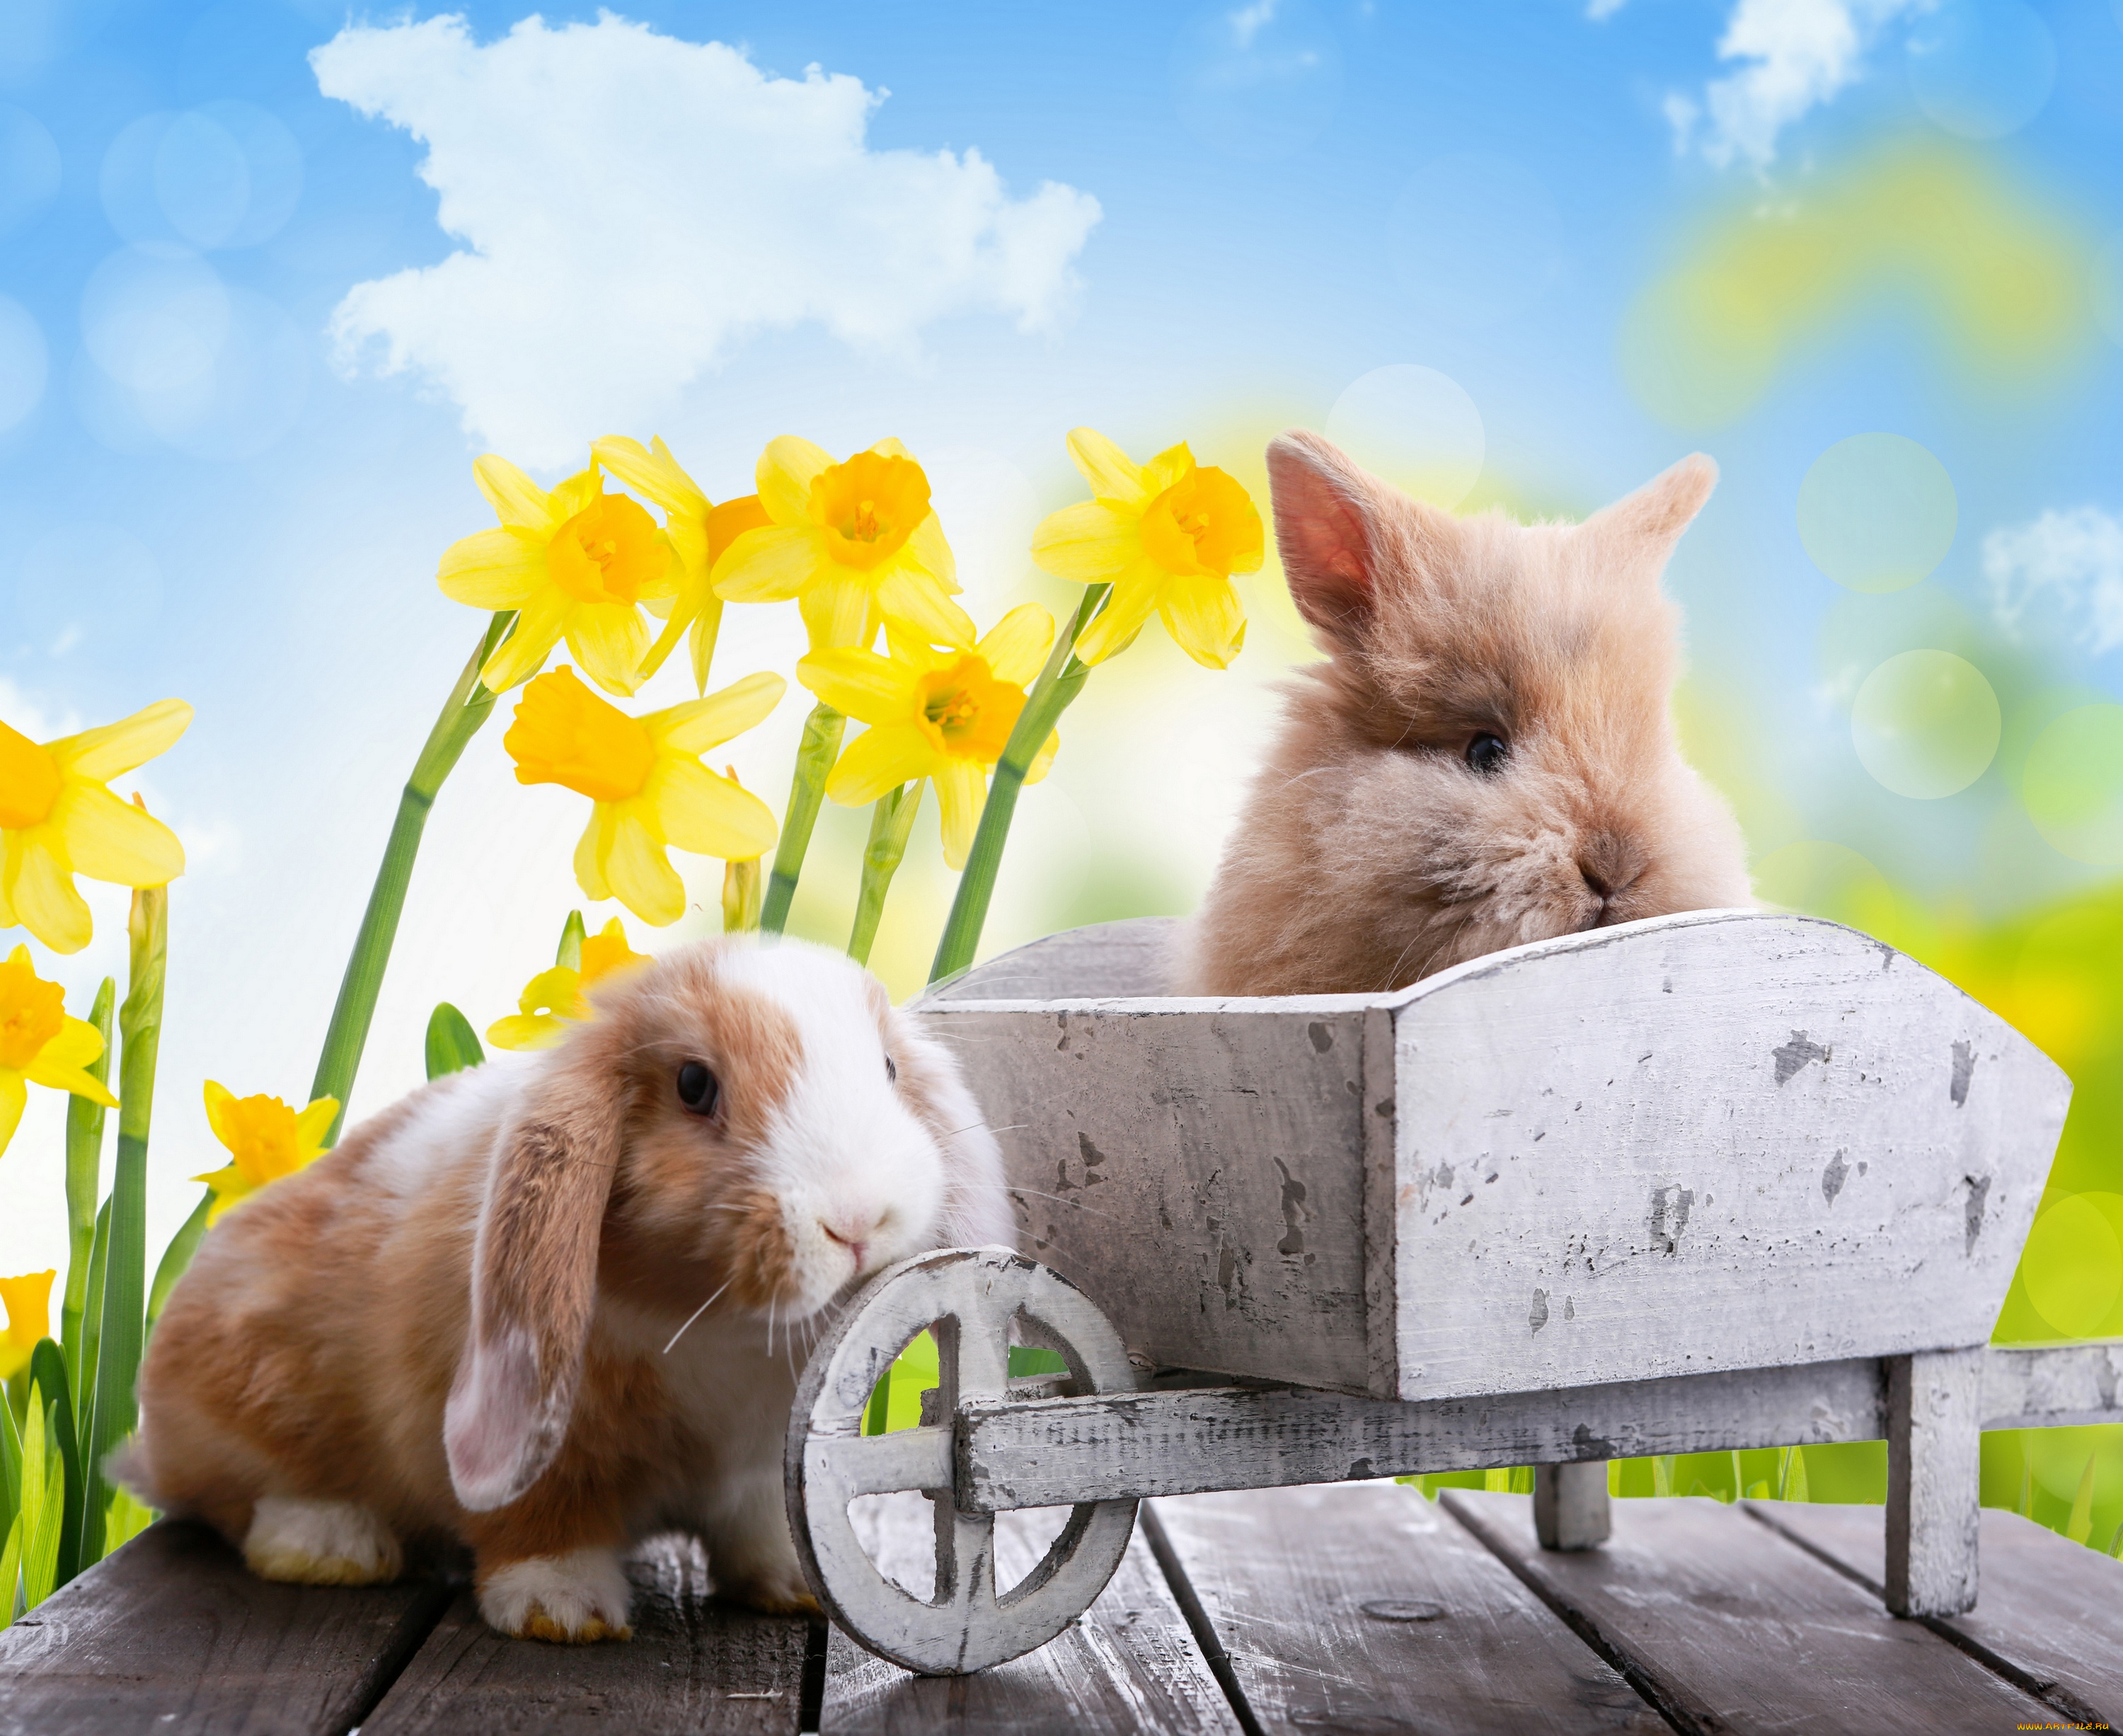 животные, кролики, , зайцы, пасха, праздник, лучи, боке, ветка, тюльпаны, цветы, природа, весна, easter, небо, яйца